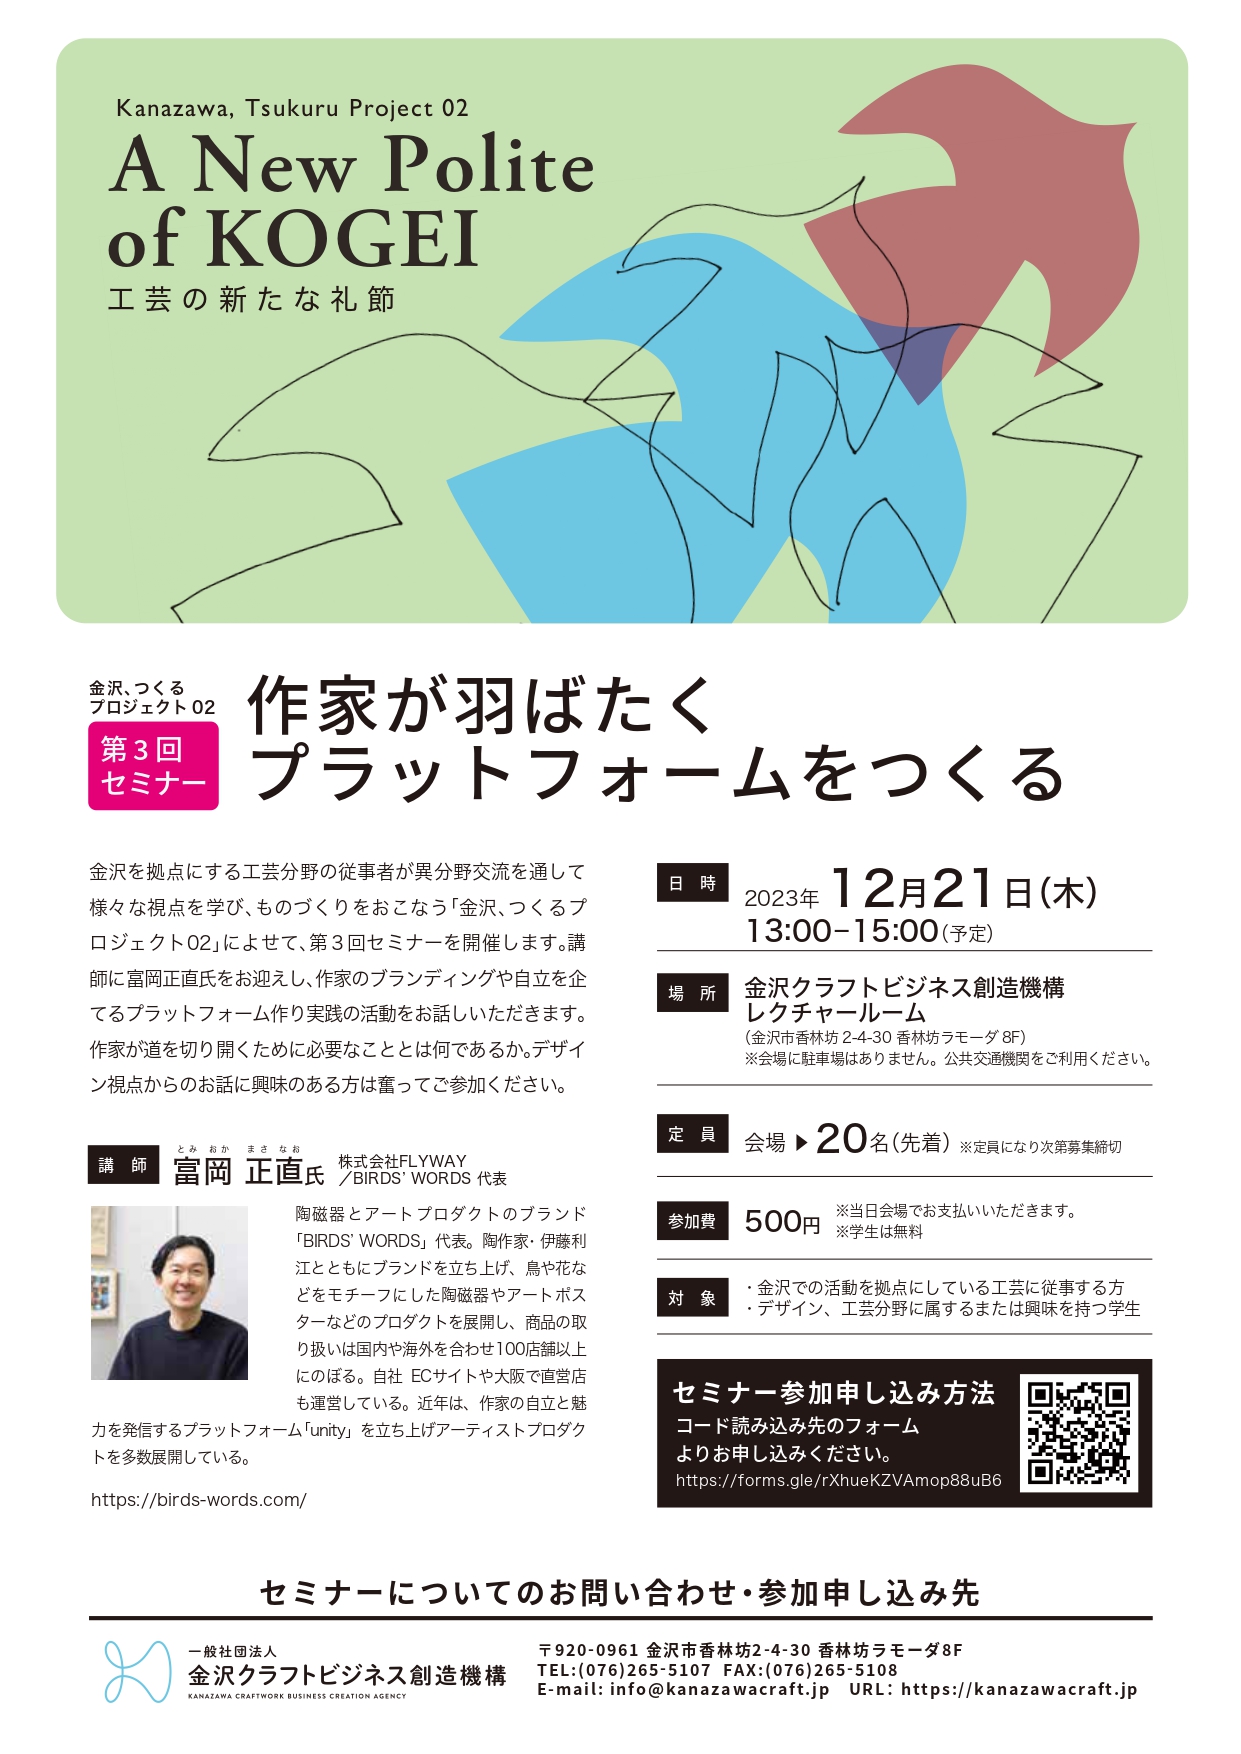 金沢、つくるプロジェクト02 第3回セミナー「作家が羽ばたくプラットフォームをつくる」 参加者募集！